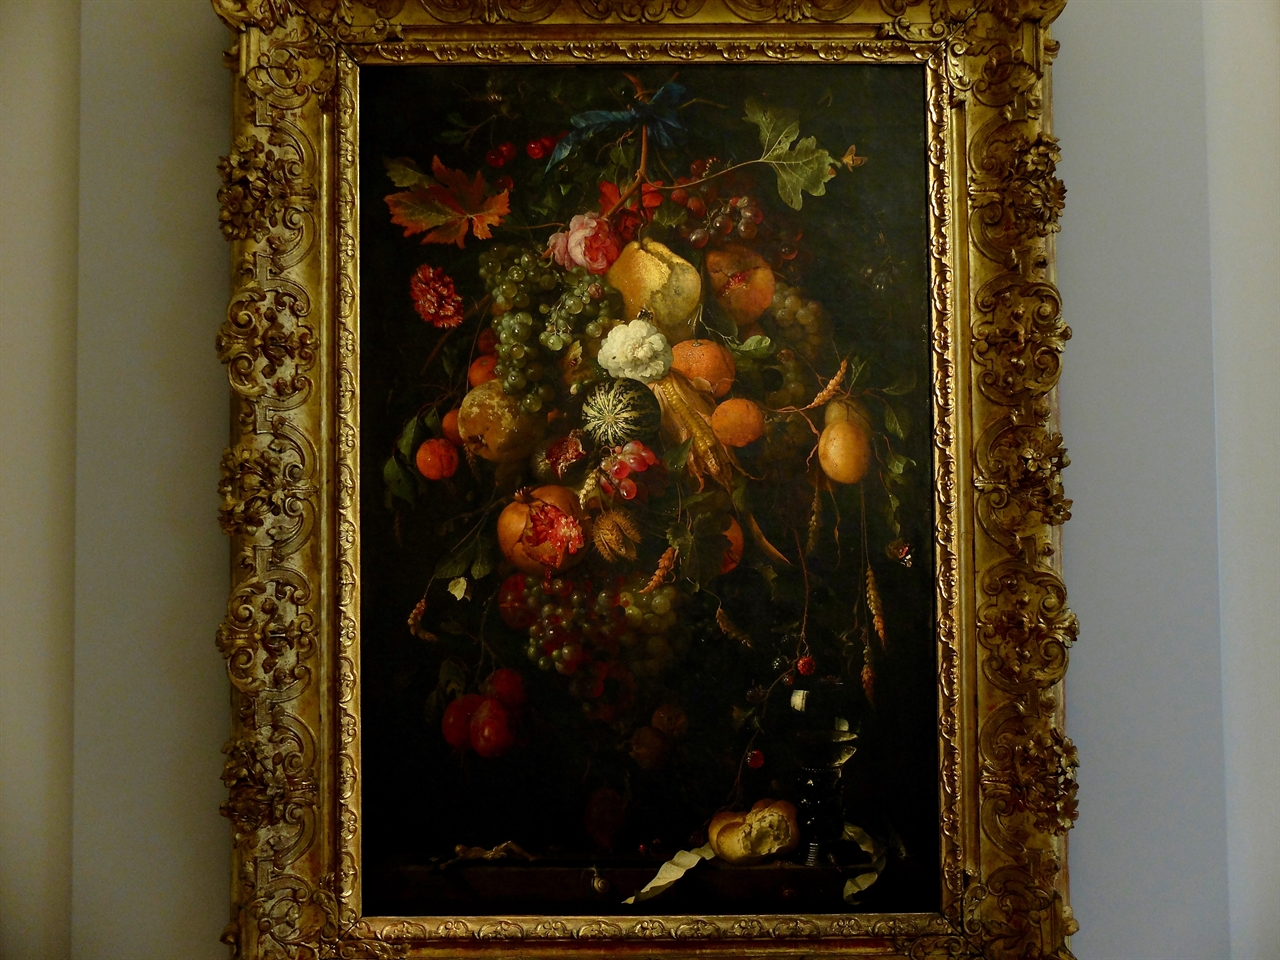 얀 다비즈 데 헴, '꽃과 과일의 정물', 토리노 사바우다 미술관. 17세기 네덜란드에서 활동했던 가장 위대한 정물화가로 평가받는 얀 다비즈 데 헴은 평생 꽃과 과일만 그린 것으로 유명합니다. 